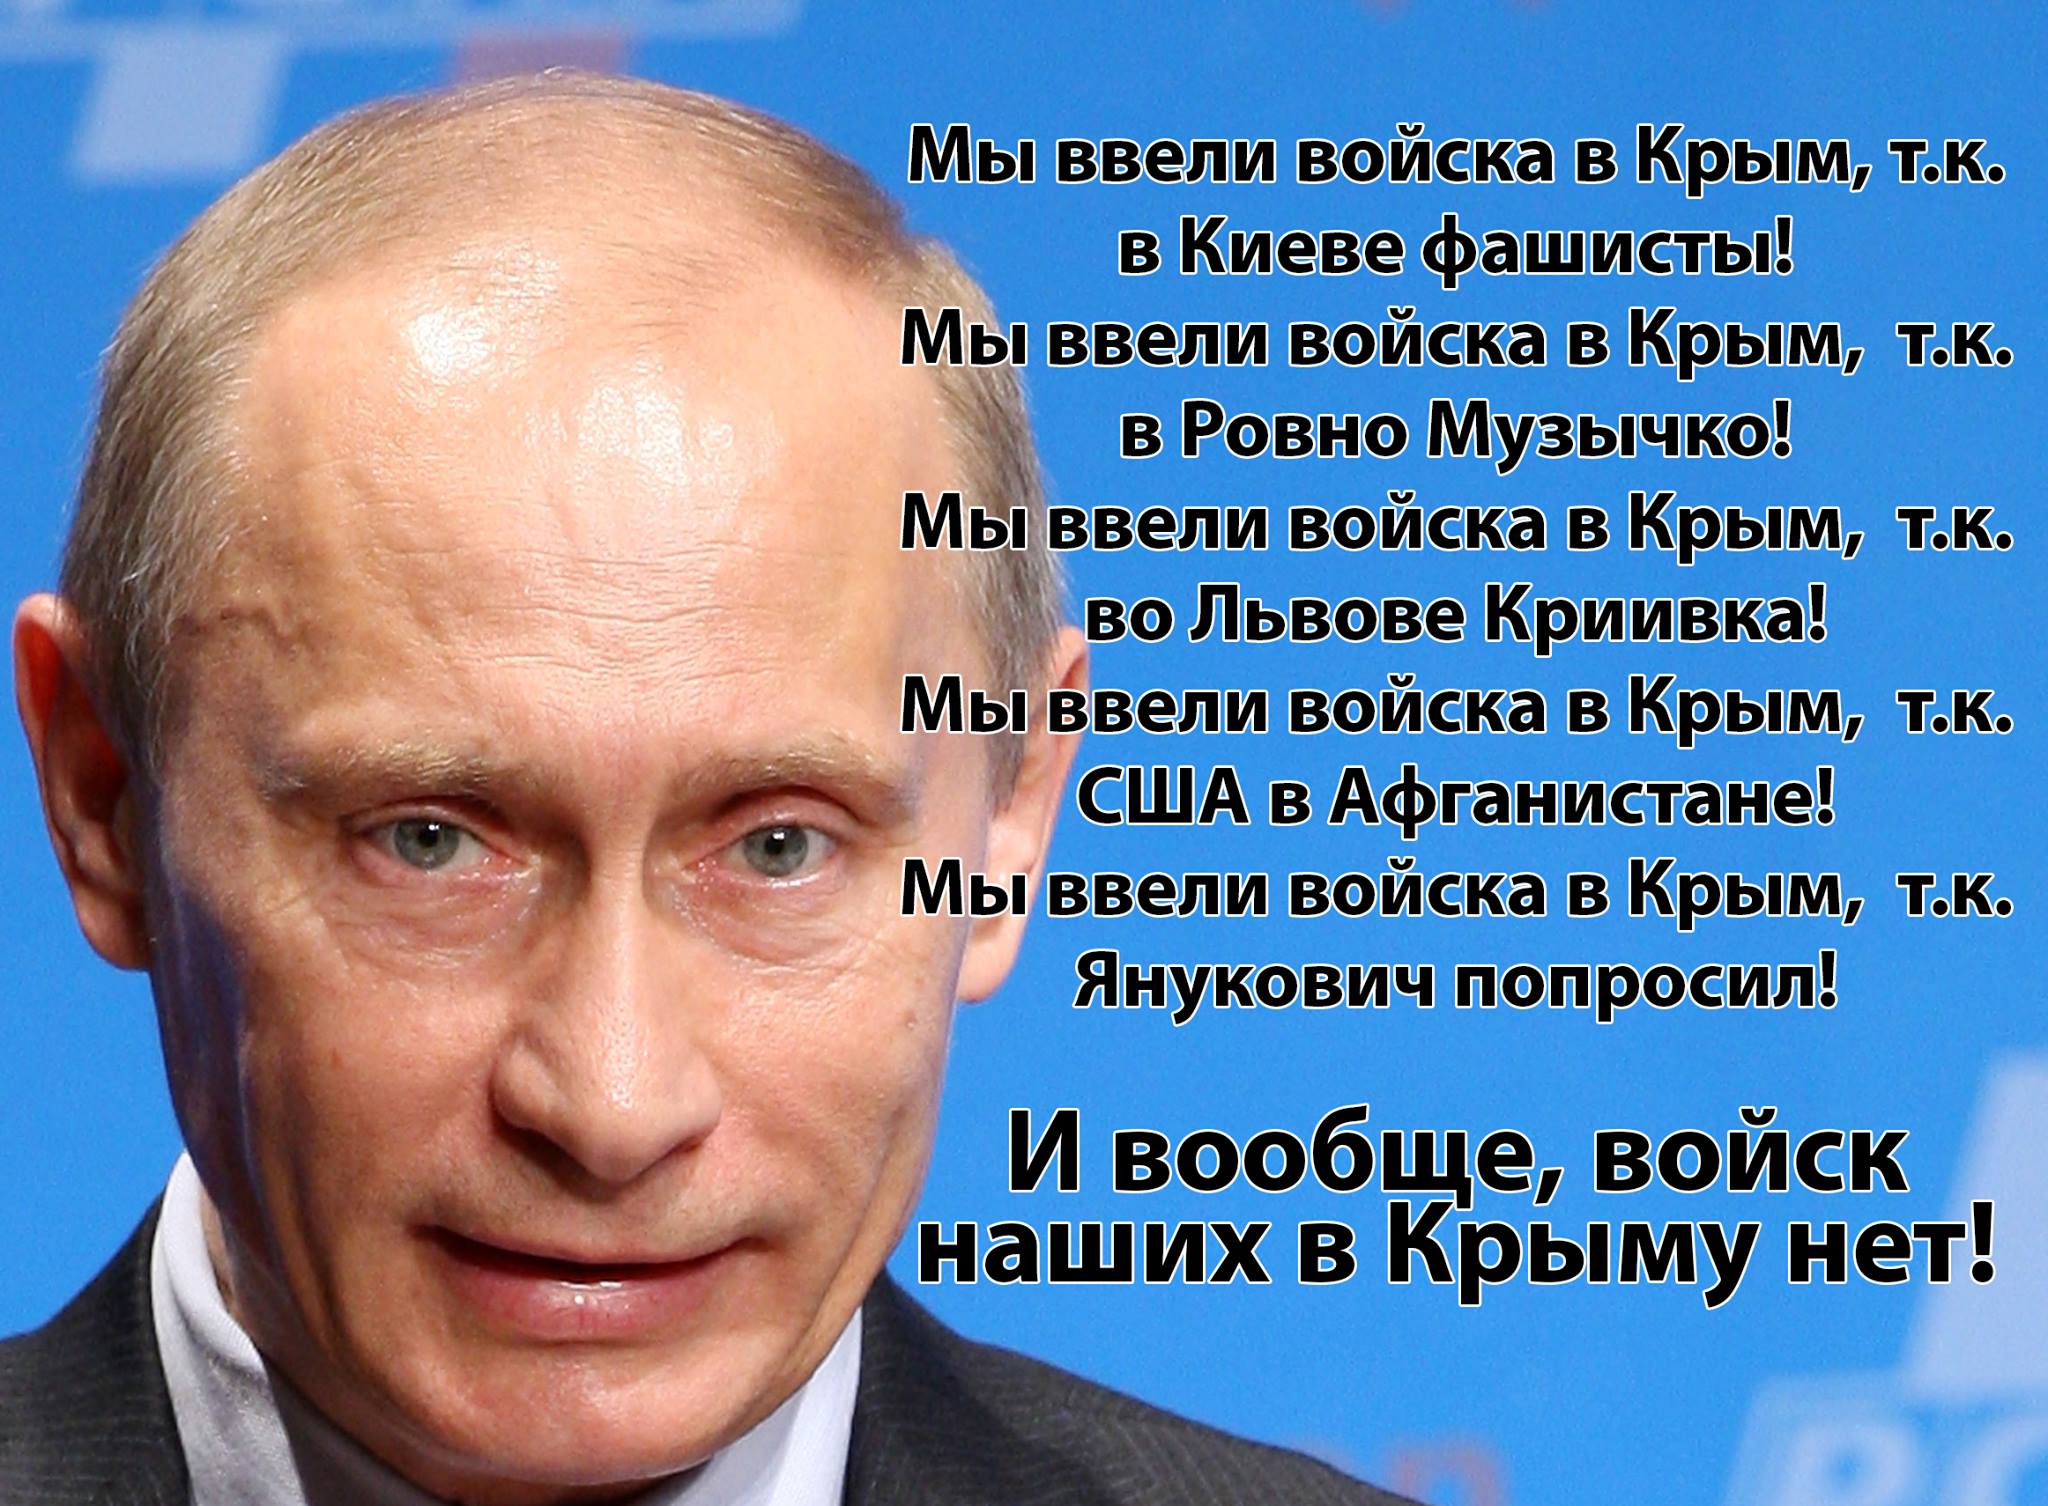 Путин до ботокса